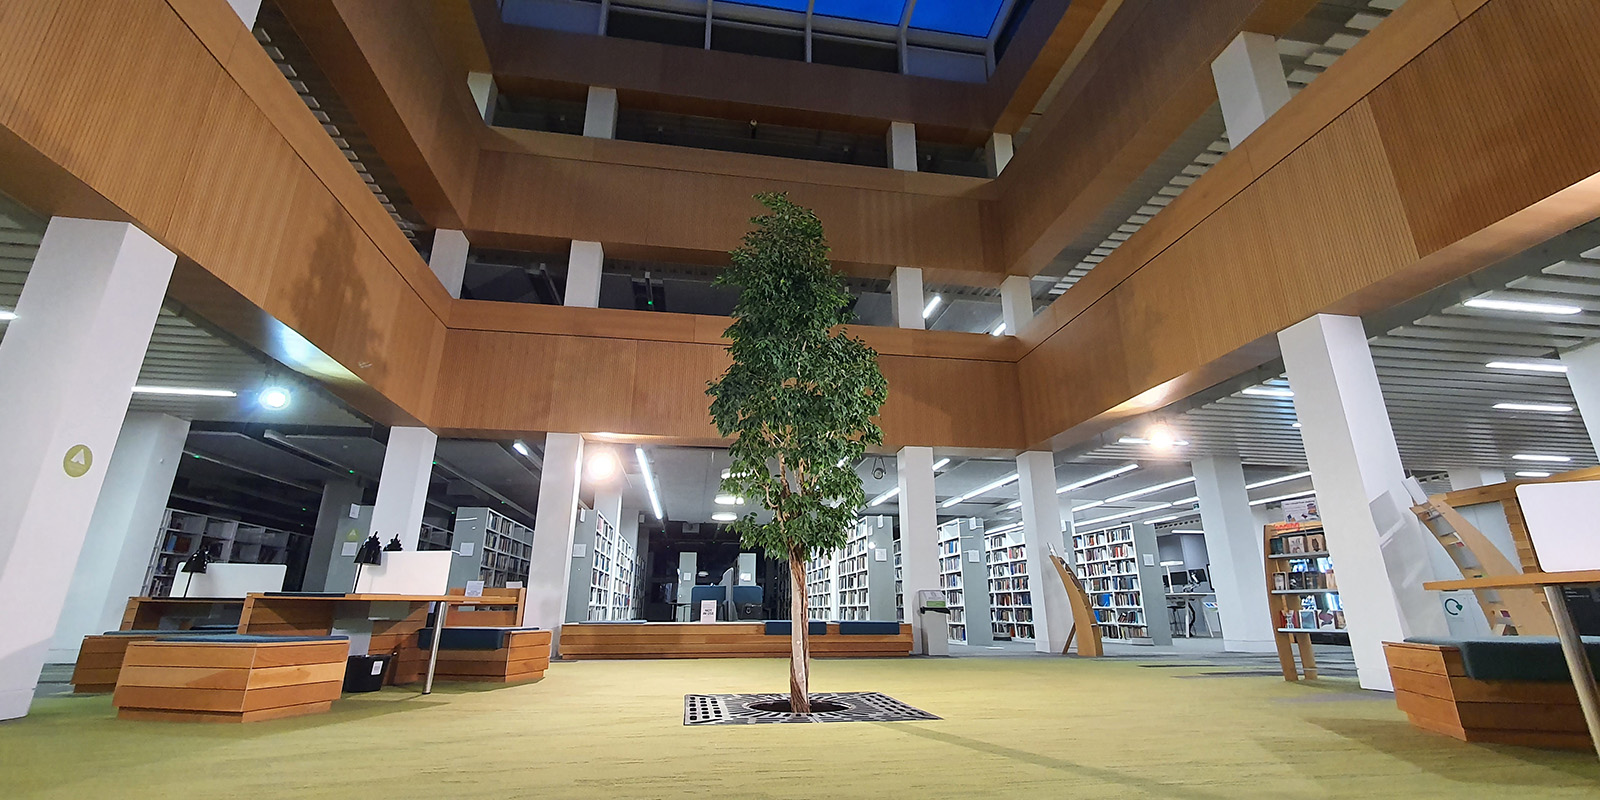 新加坡六合彩开奖直播 library foyer with the living tree in the centre.